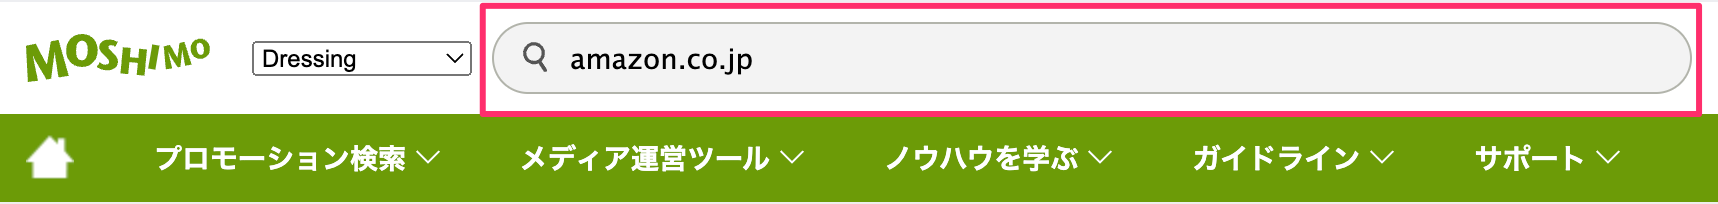 もしもアフィリエイトの検索窓にamazon.co.jpを入力して検索する画面のスクリーンショット